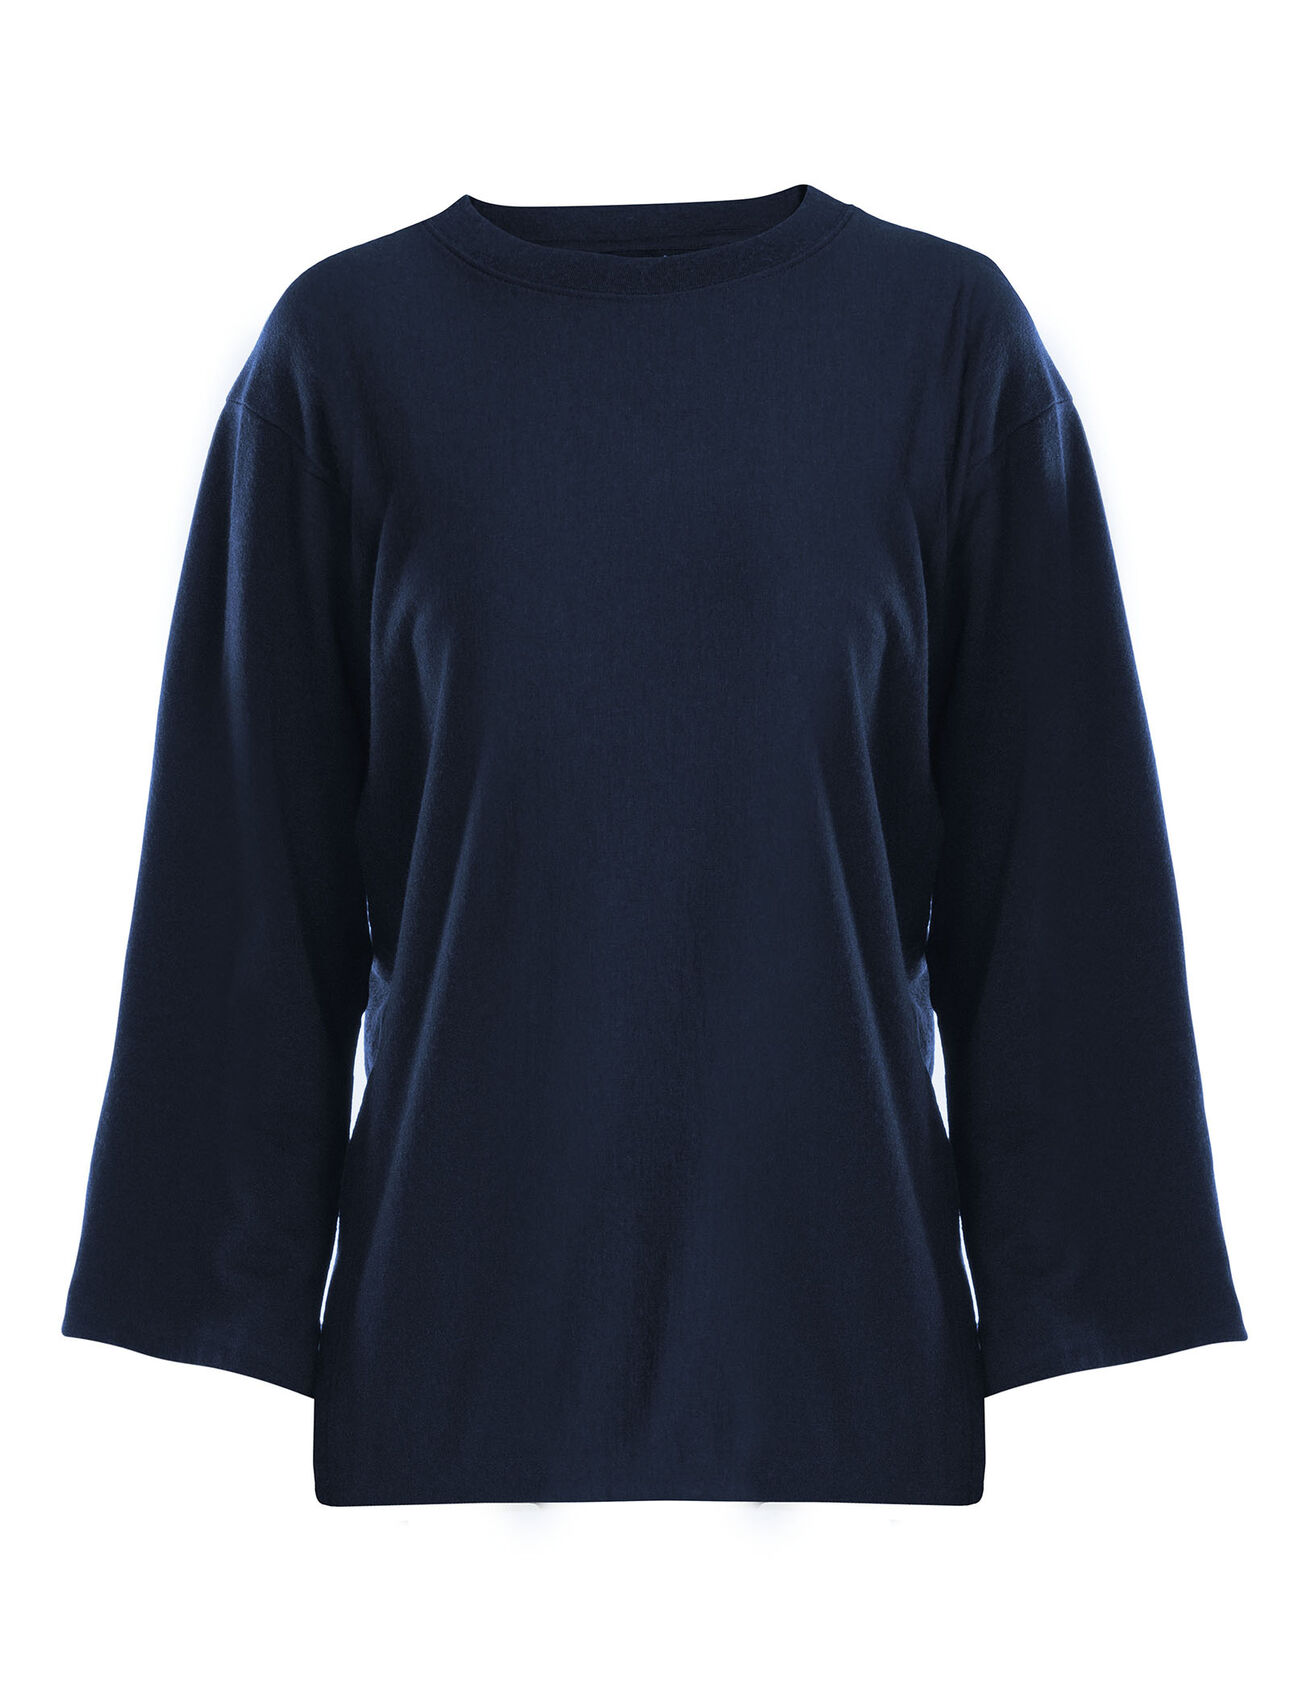 Micro-Terry långärmad t-shirt i merino med avslappnad passform och rund halsringning